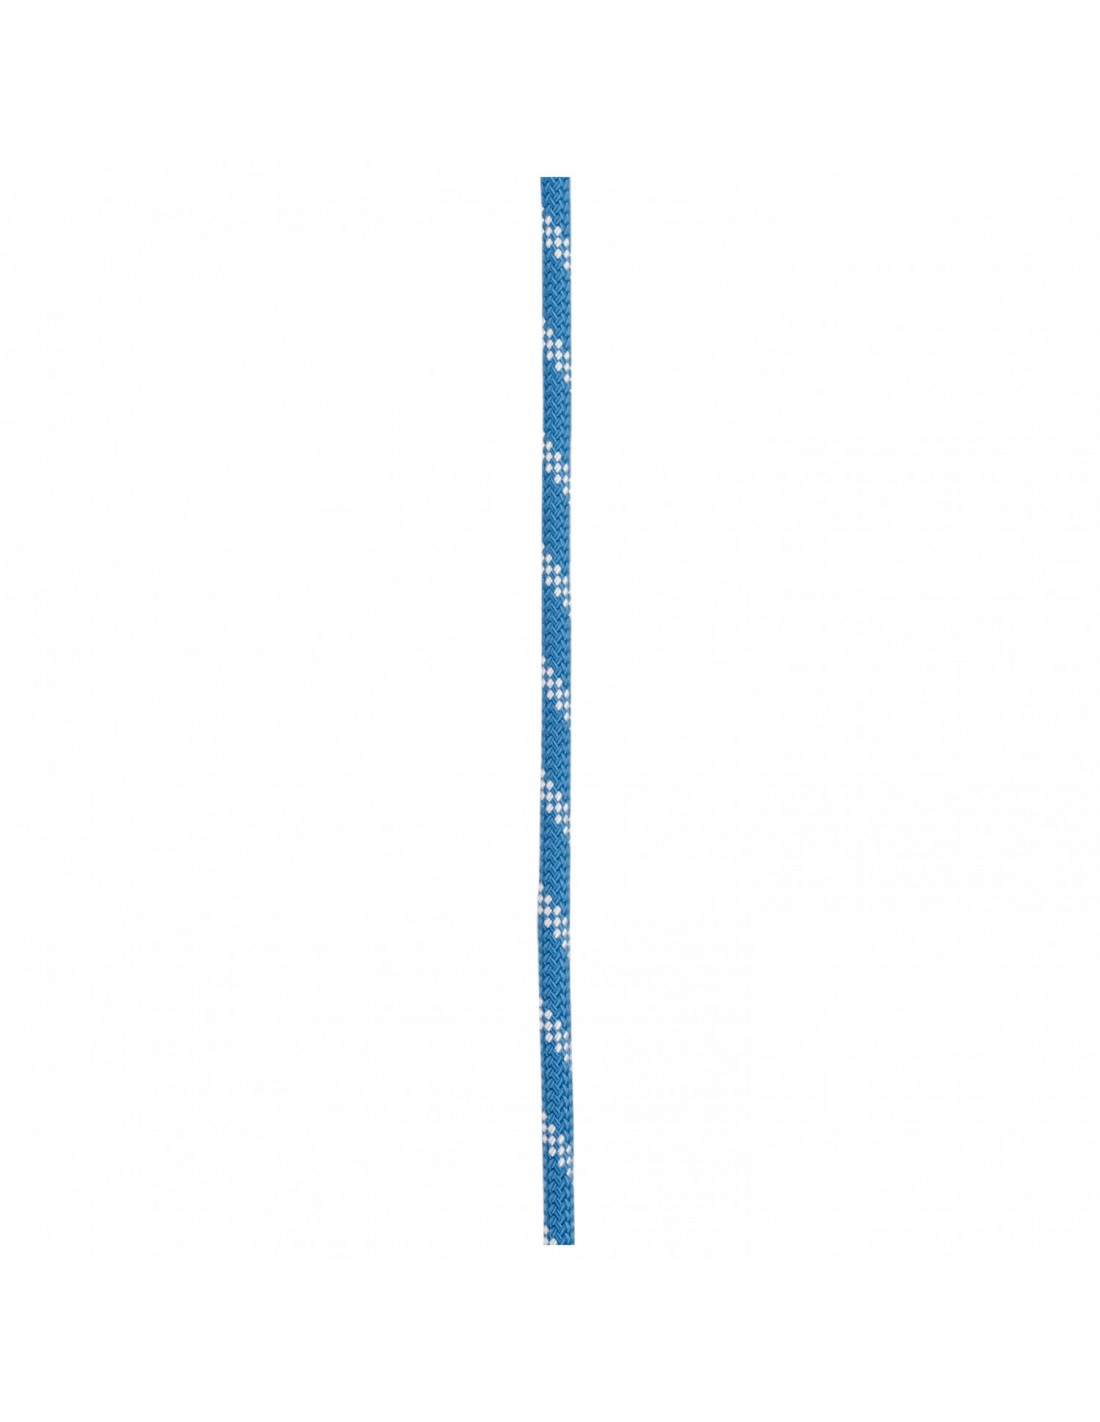 Edelrid Kletterseil Prostatic Synctec 10,5 mm, blue, 50 Meter Seildurchmesser - 10.1 - 10.5 mm, Seilvariante - Statikseil, Seilfarbe - Blau, Seillänge - 50 m, Seilgewicht - 76 - 80 g / m, von Edelrid